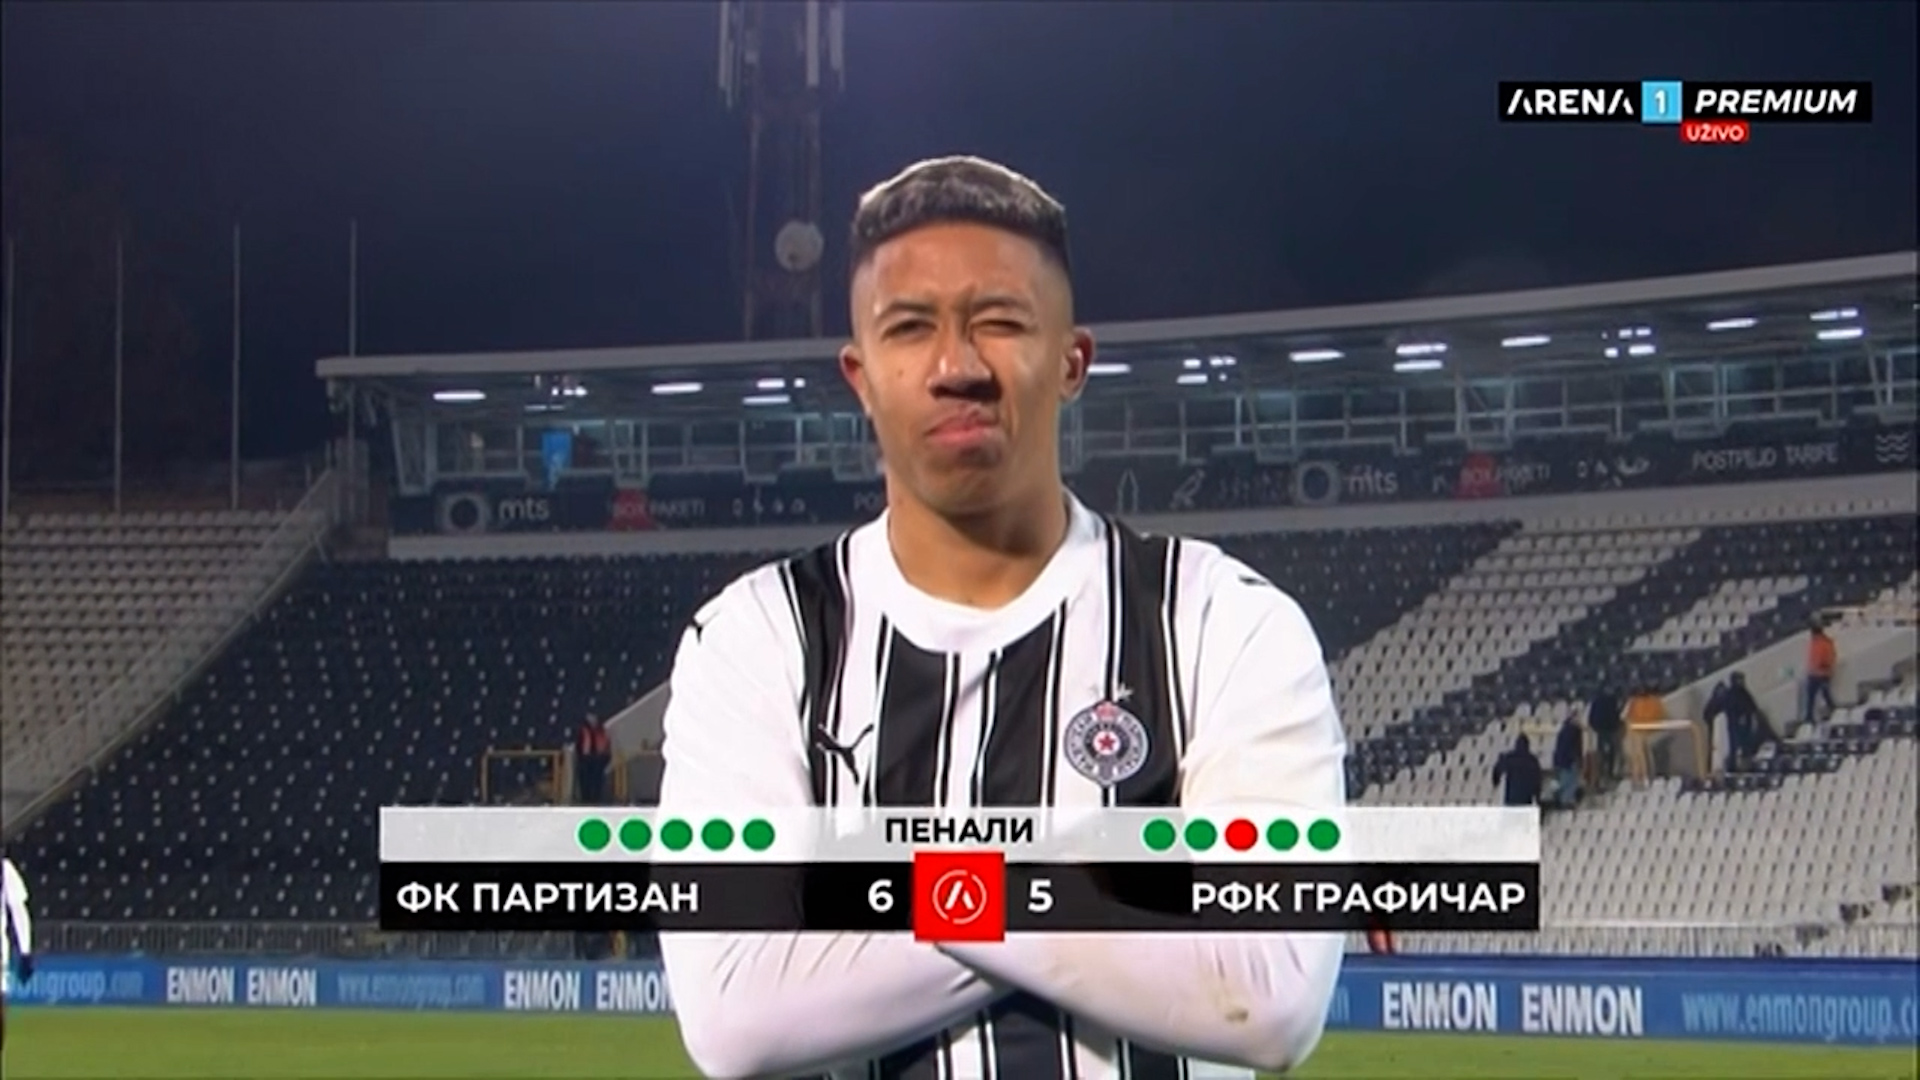 Radnički - Partizan, a TV prenos uživo na Arena sport - Sportal